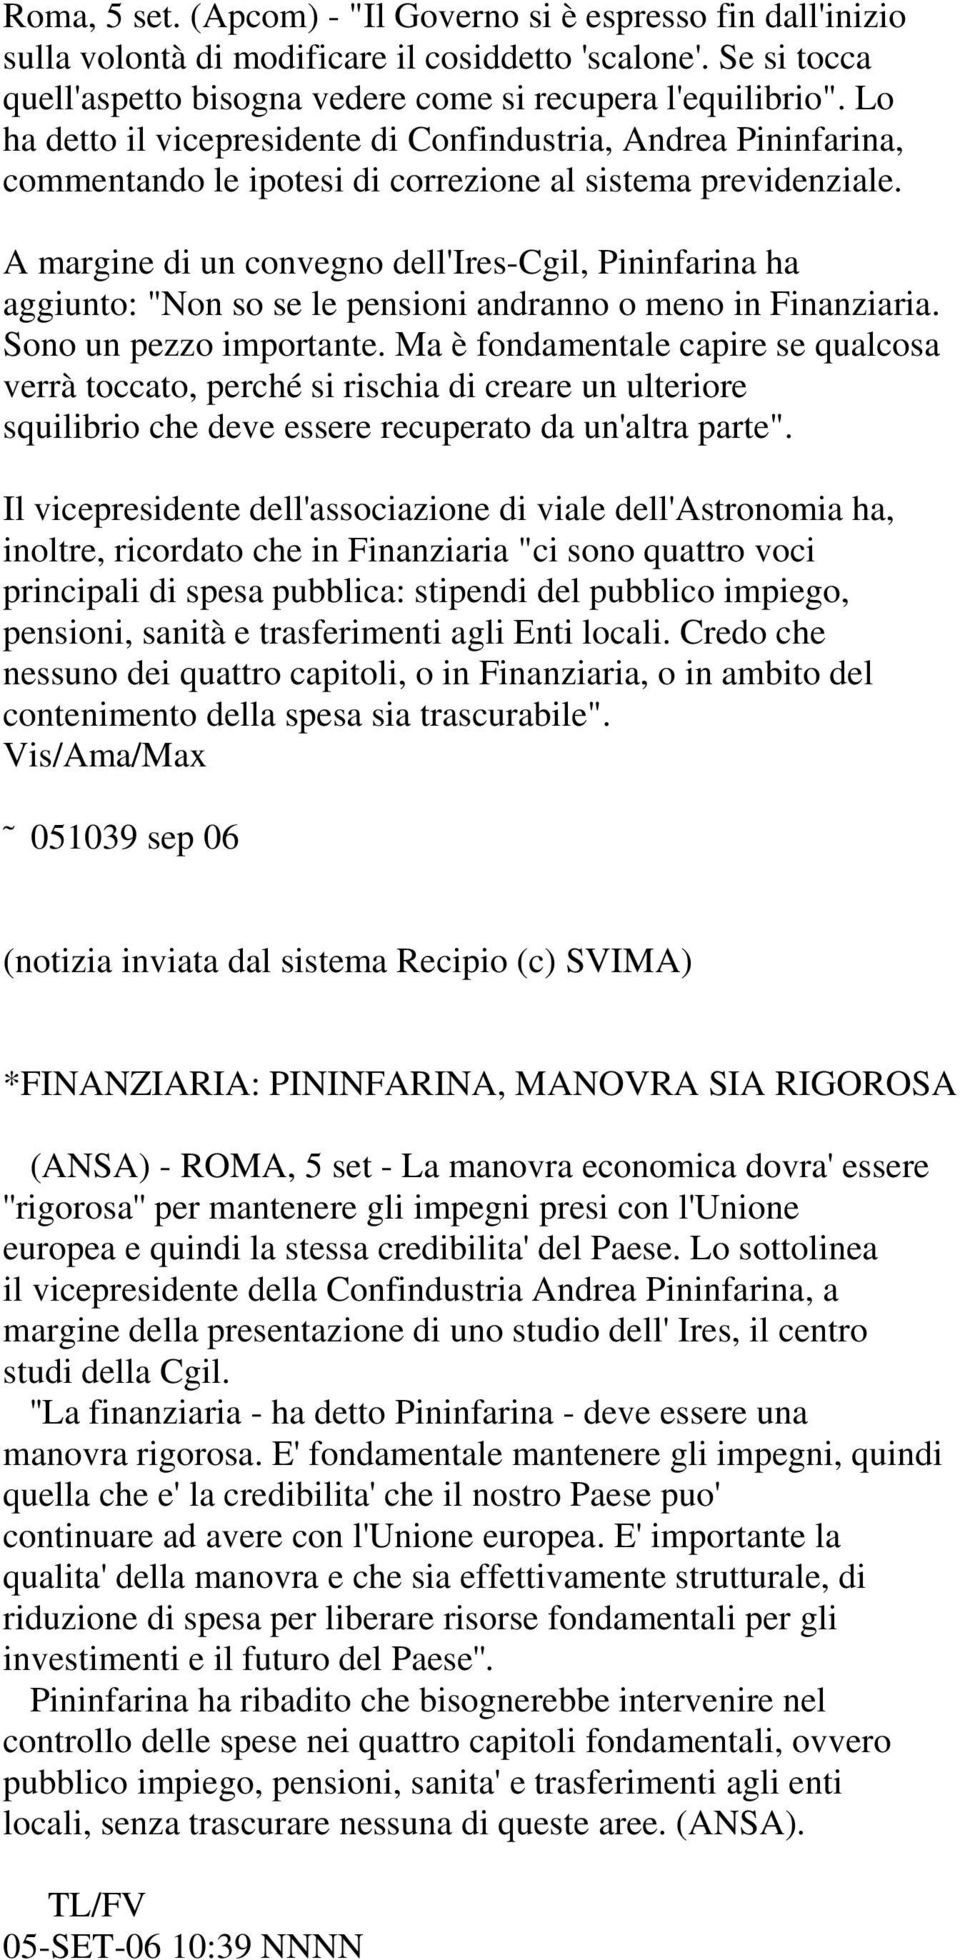 A margine di un convegno dell'ires-cgil, Pininfarina ha aggiunto: "Non so se le pensioni andranno o meno in Finanziaria. Sono un pezzo importante.